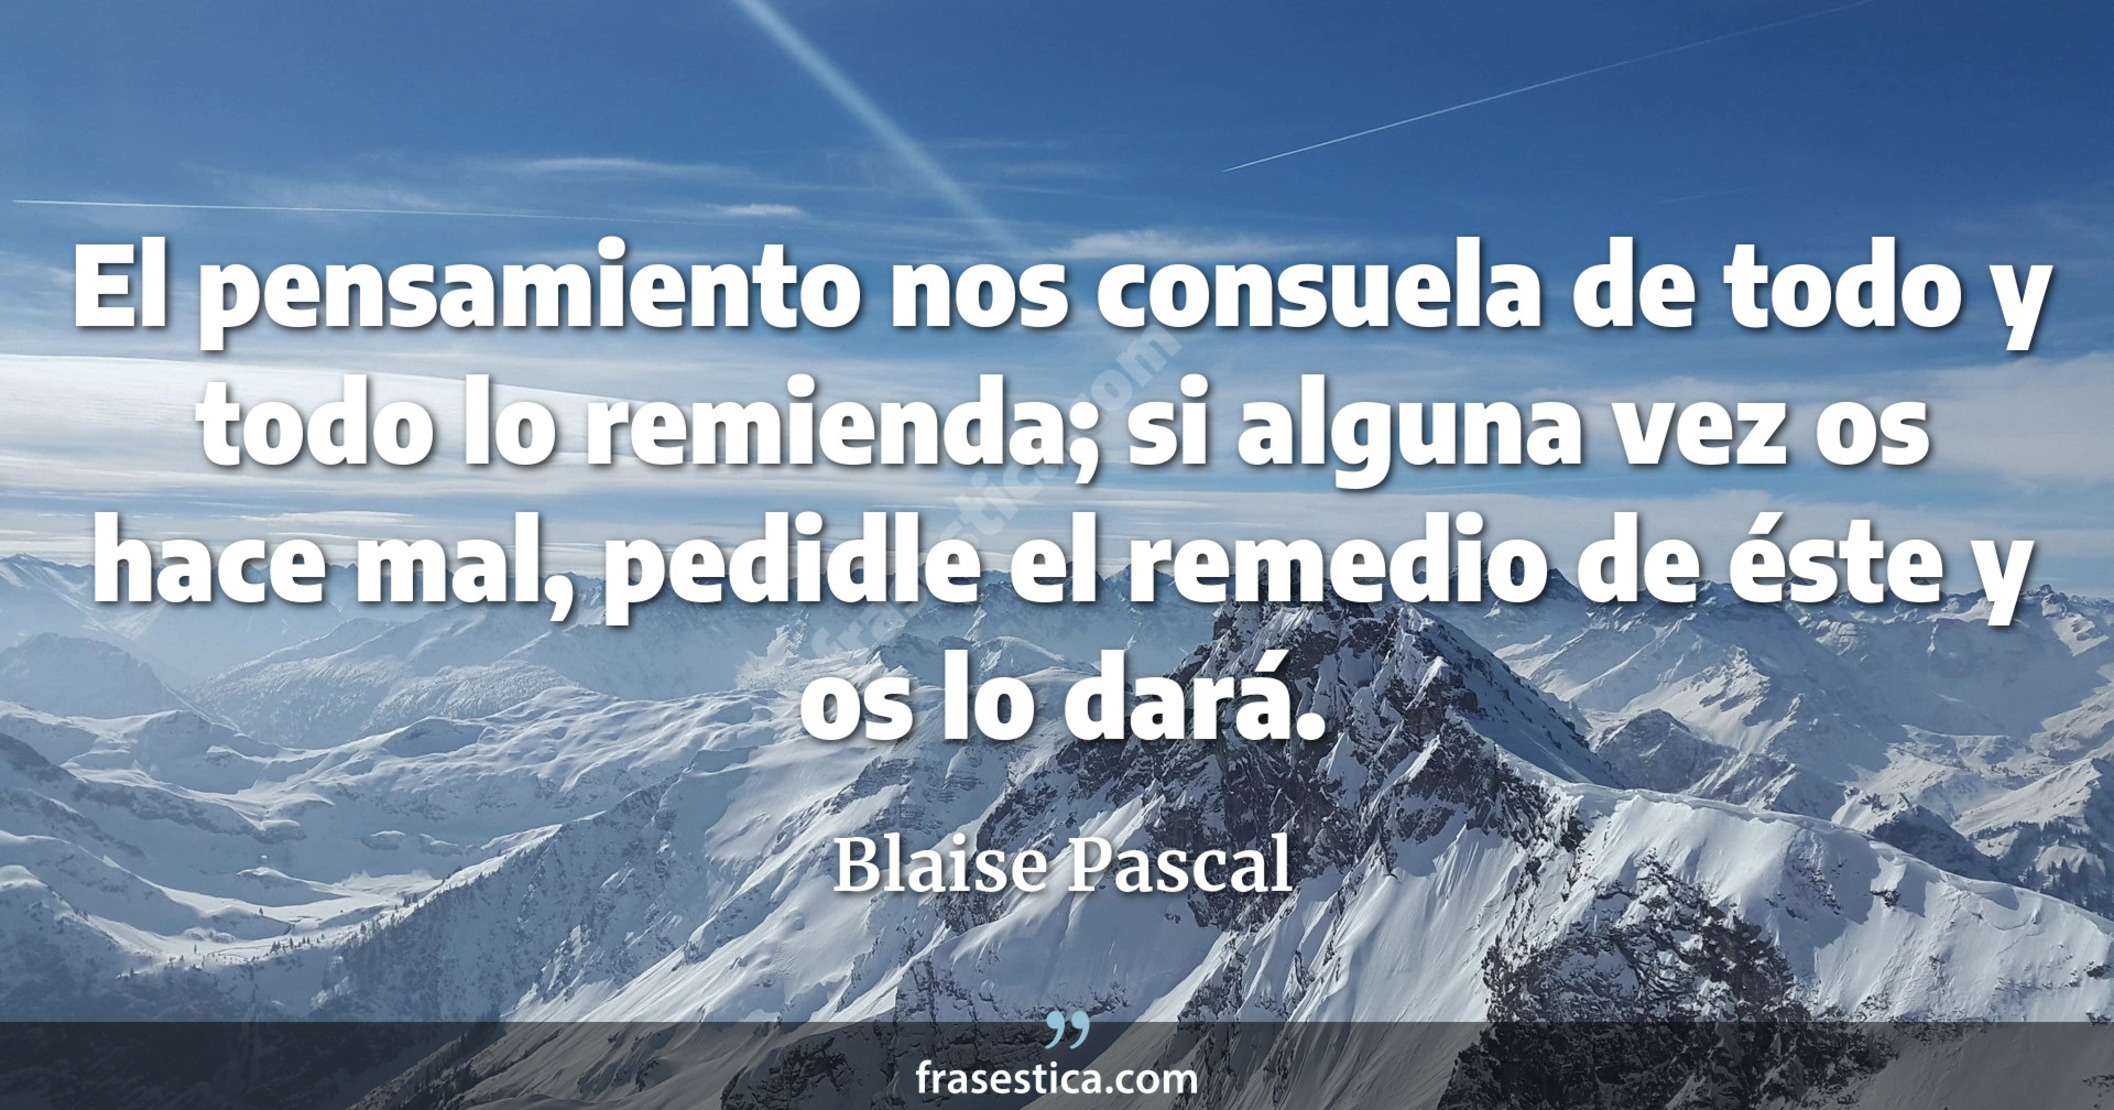 El pensamiento nos consuela de todo y todo lo remienda; si alguna vez os hace mal, pedidle el remedio de éste y os lo dará. - Blaise Pascal